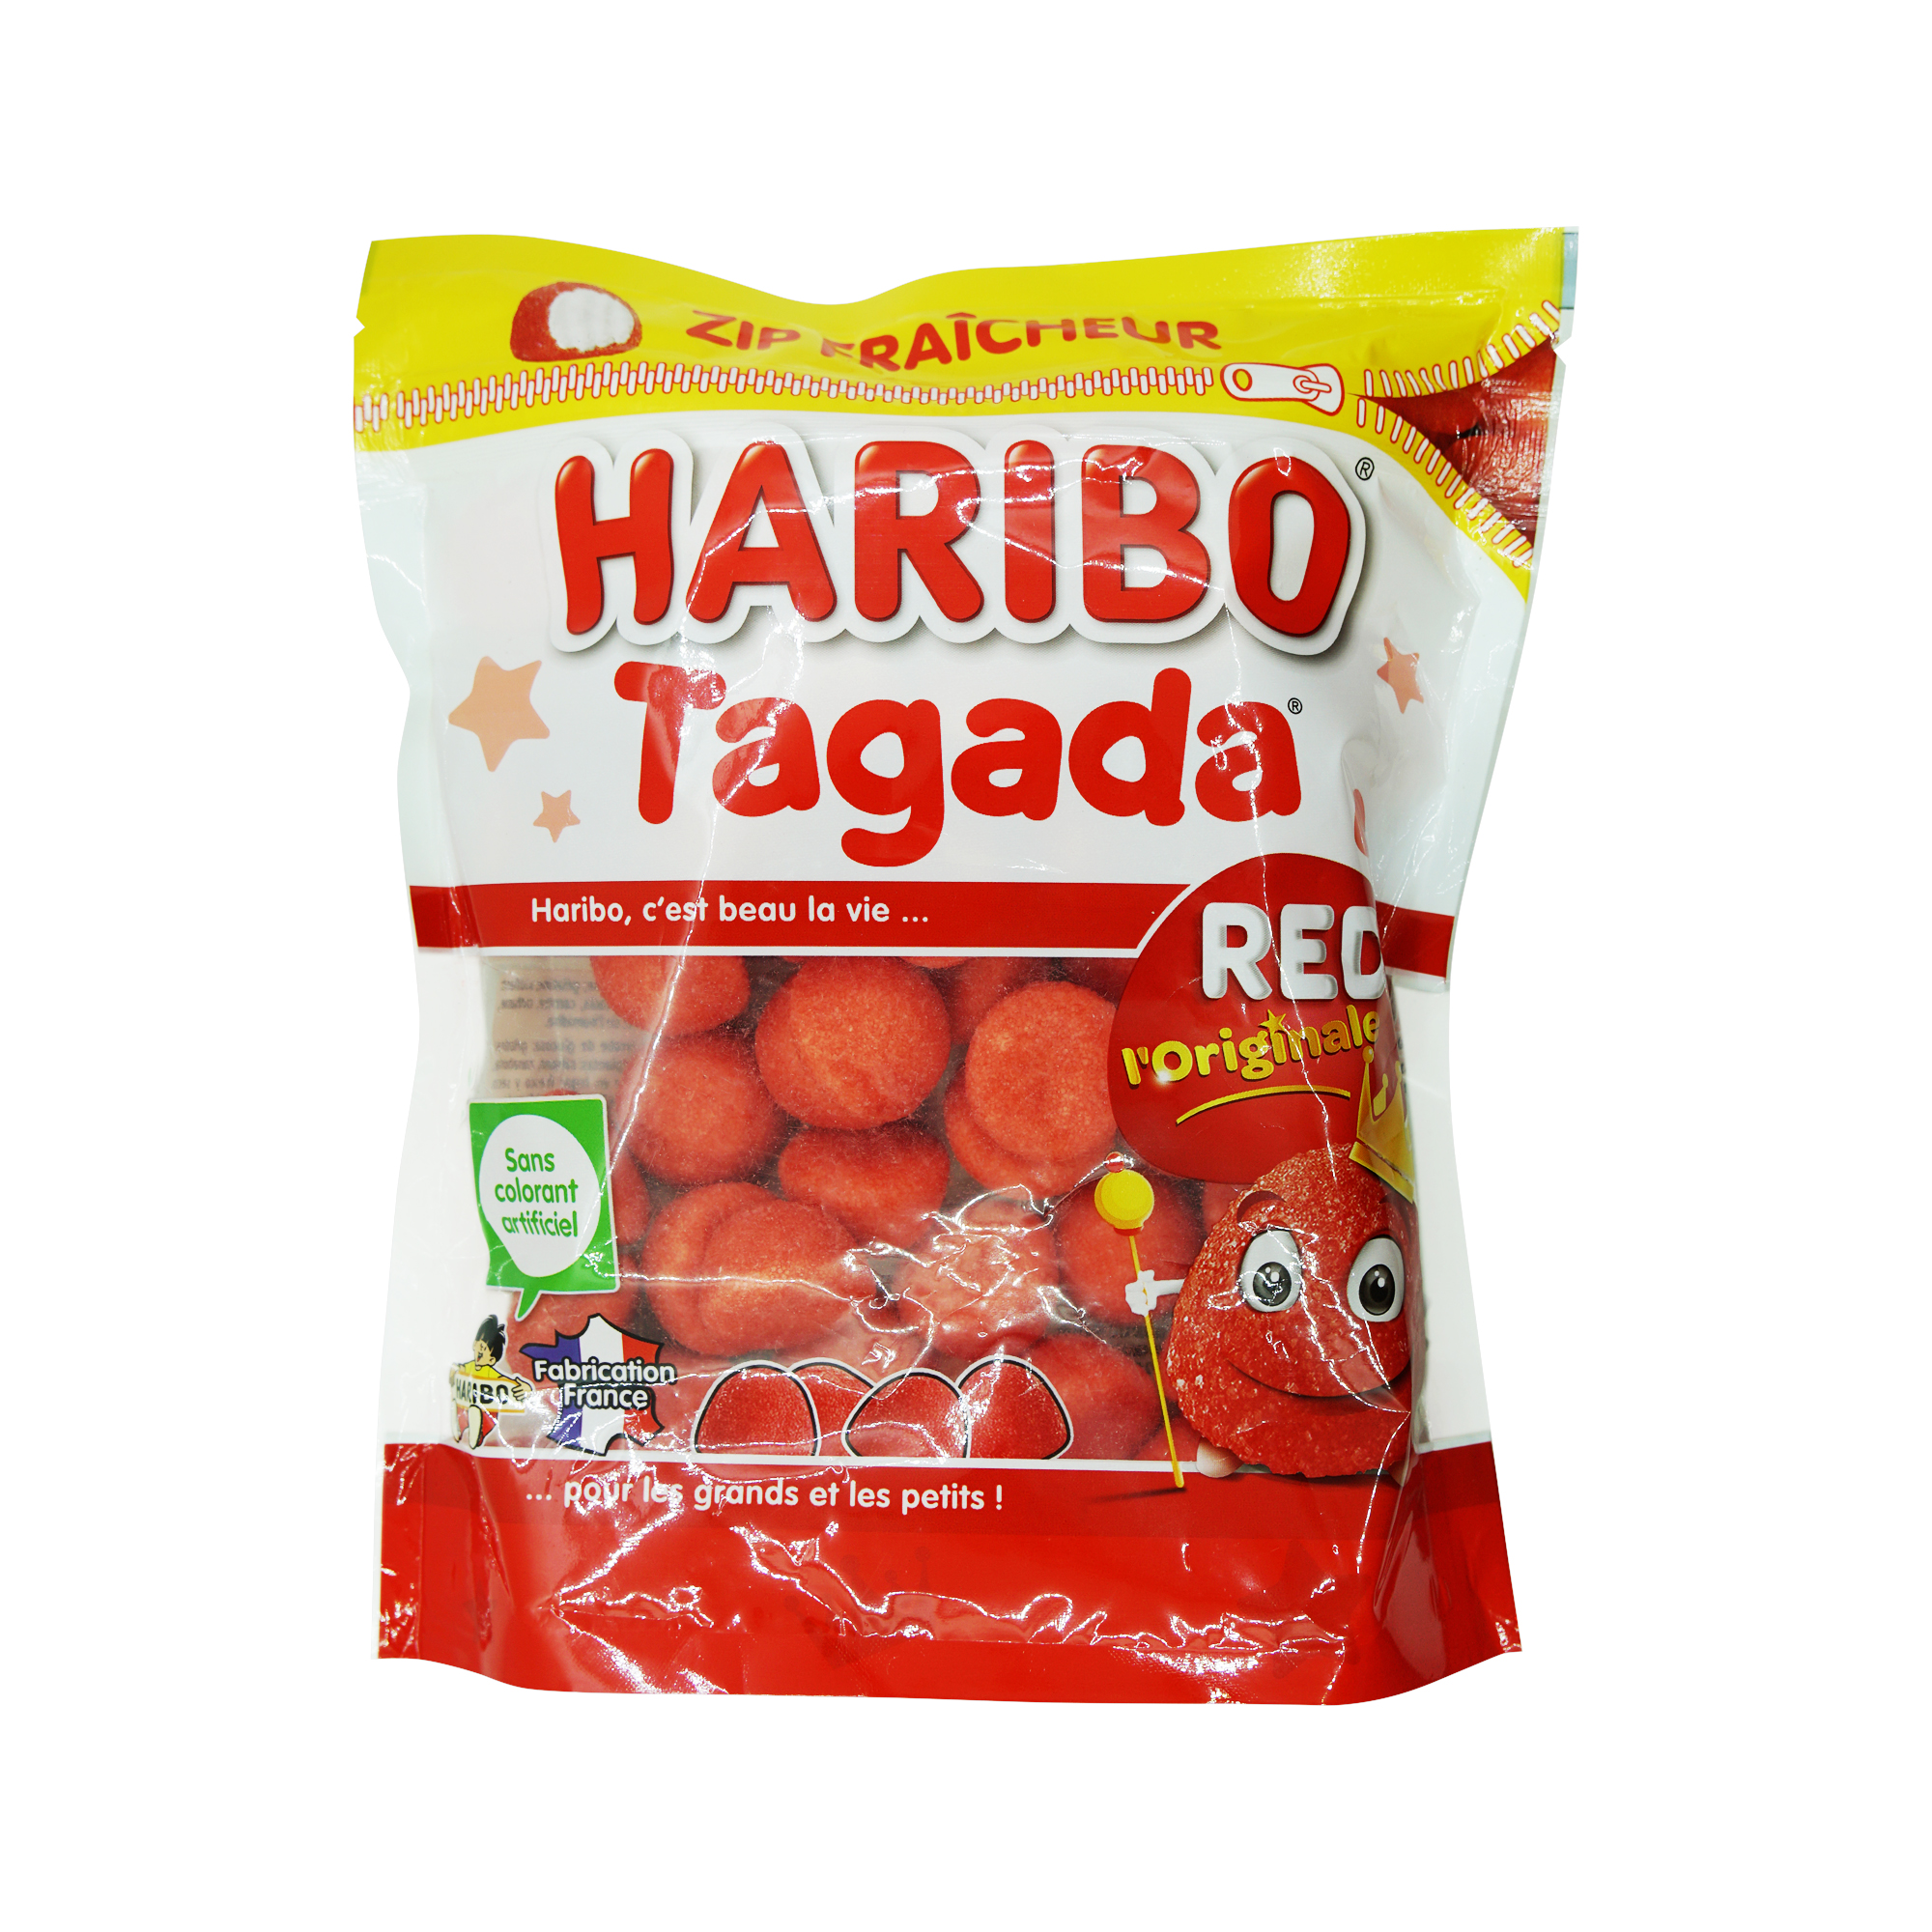 Haribo Tagada Red Doypack (220g)